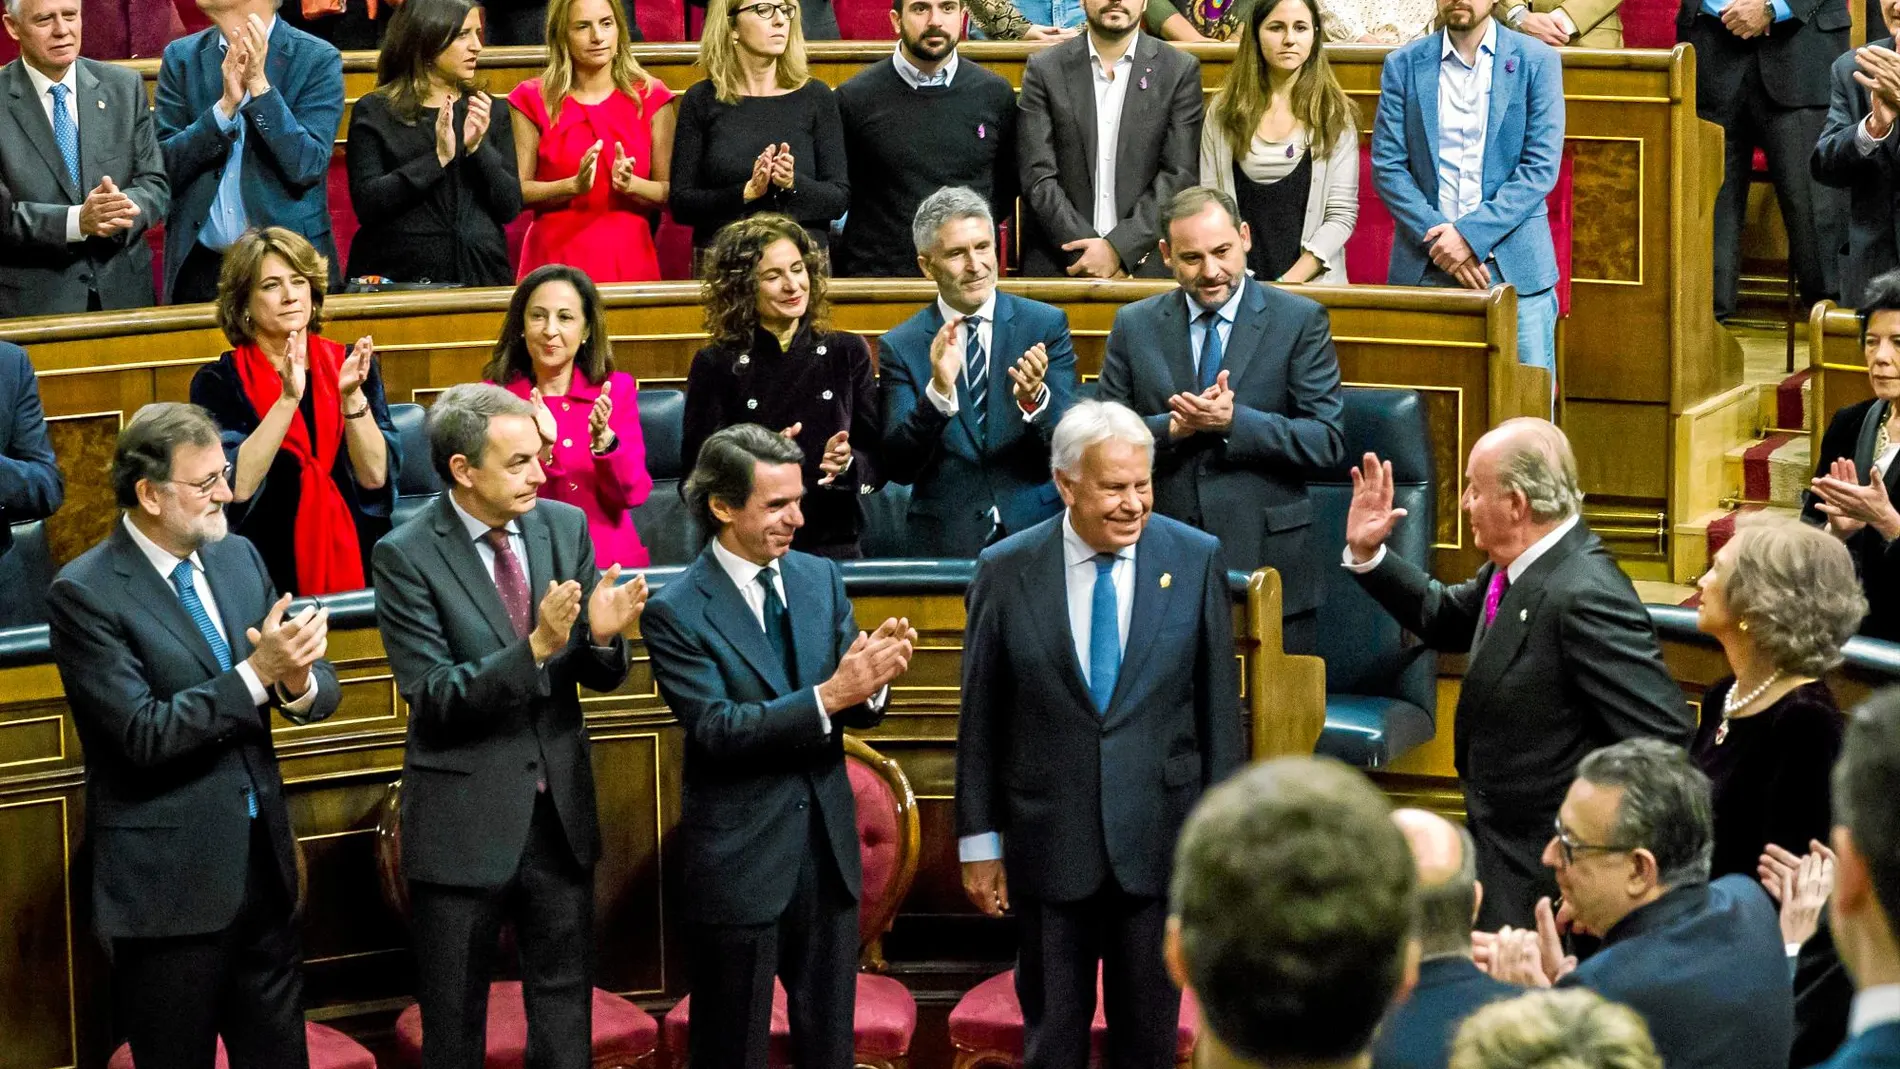 El Congreso de los Diputados se vuelca en una ovación a los Reyes Eméritos durante los actos por la Constitución, excepto la bancada de Podemos